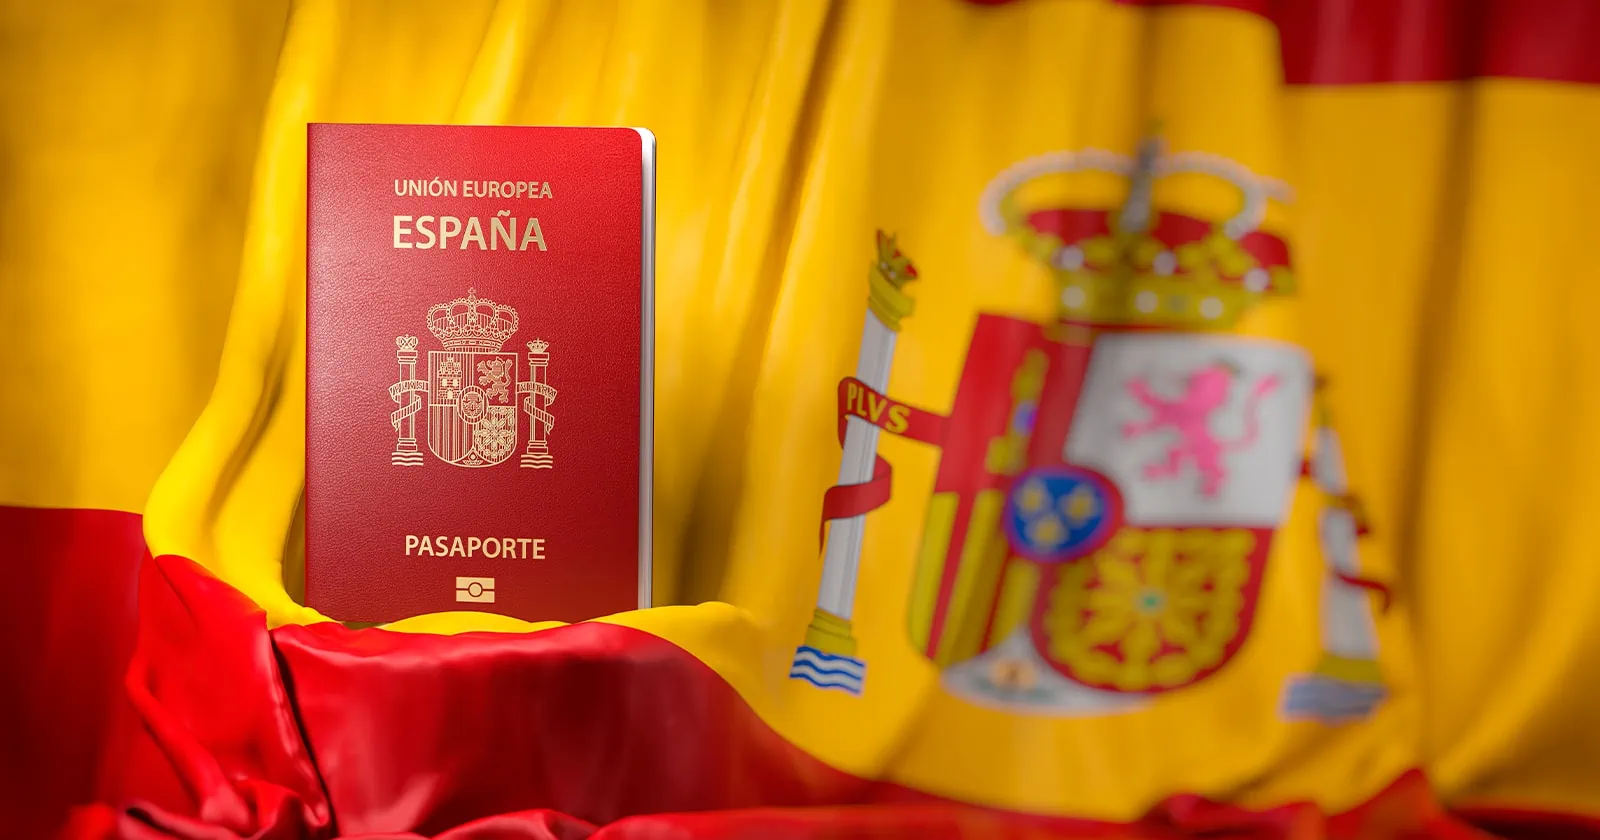 Nueva Entrega de Pasaportes: Consulado de España en Cuba Informa